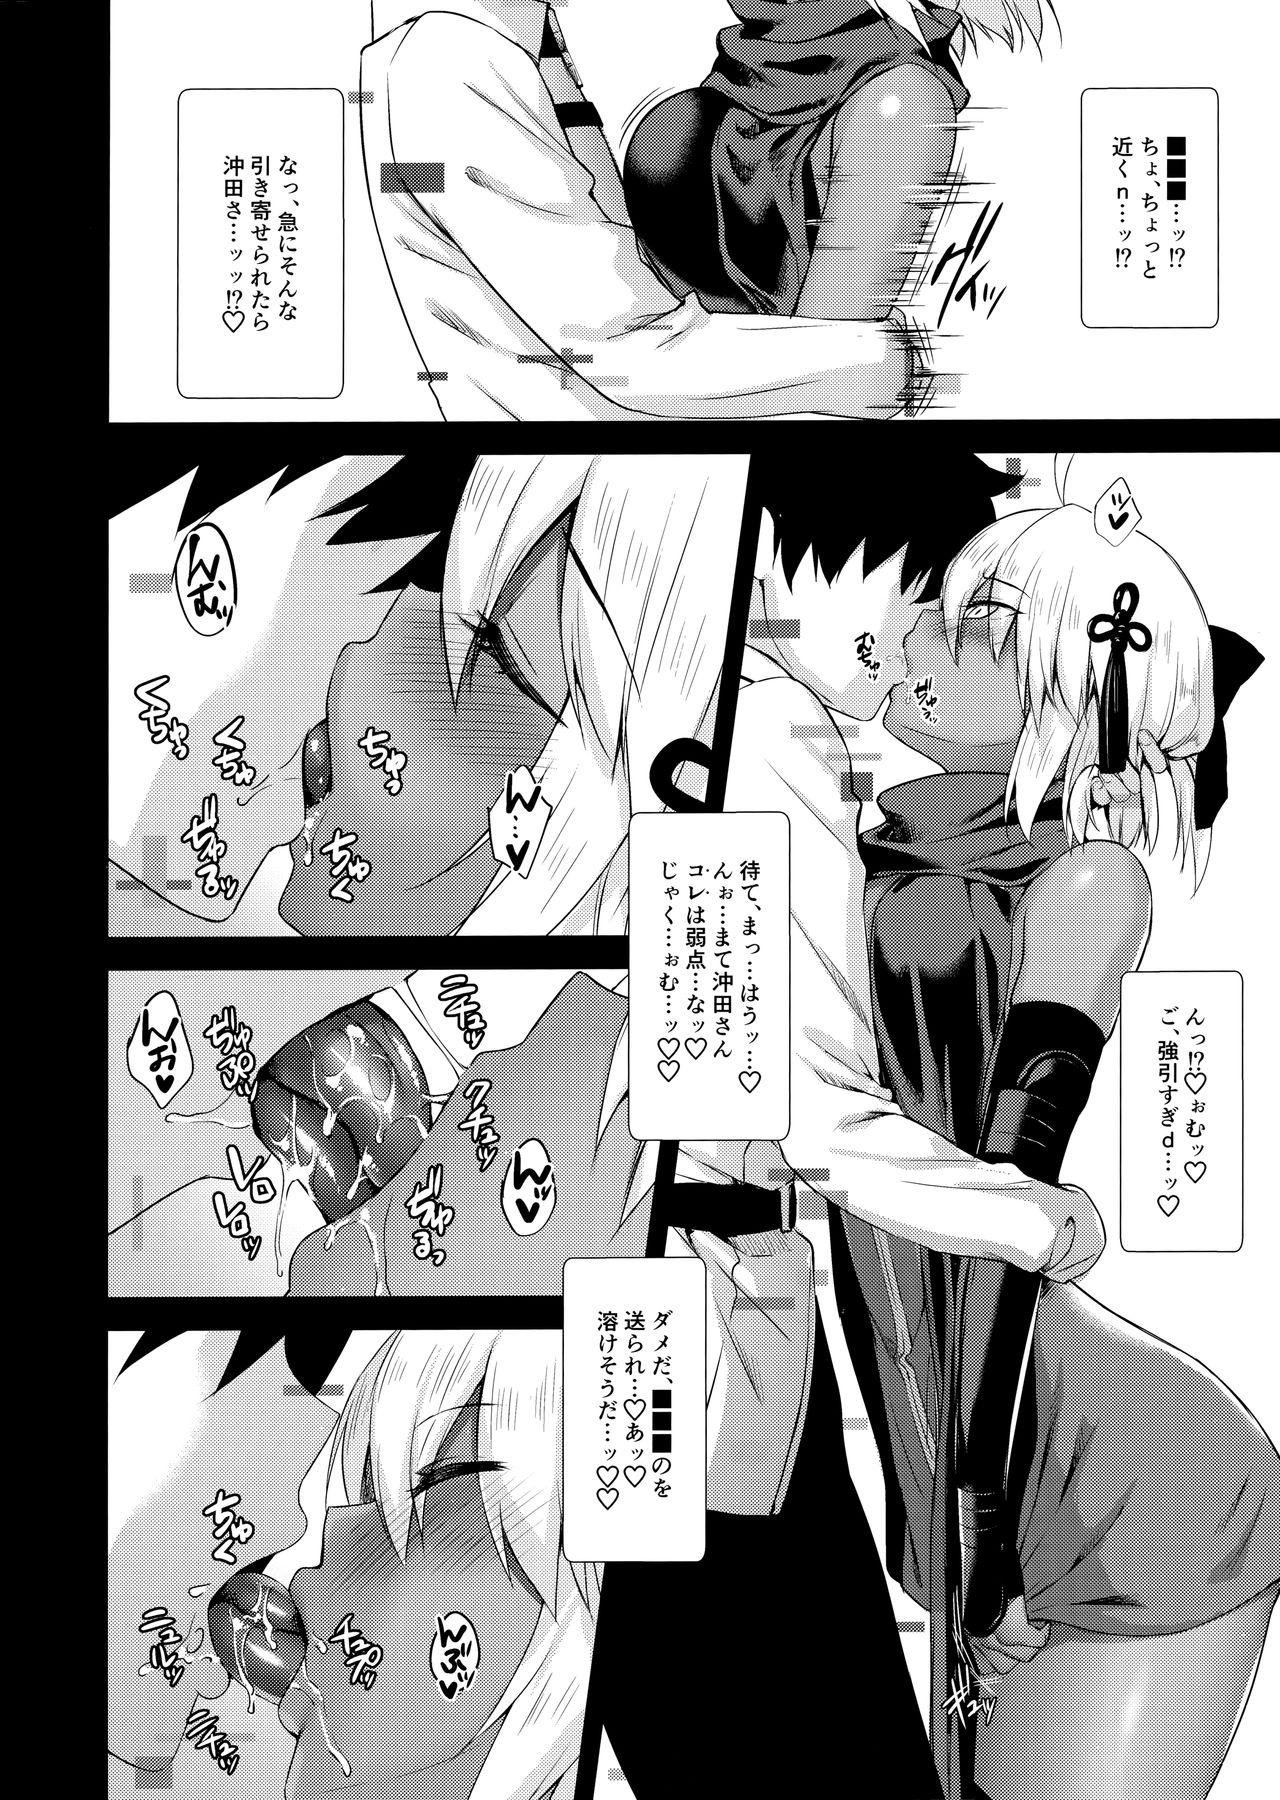 Fun Okita Alter no Tanezuke Shuukai - Fate grand order Woman - Page 4